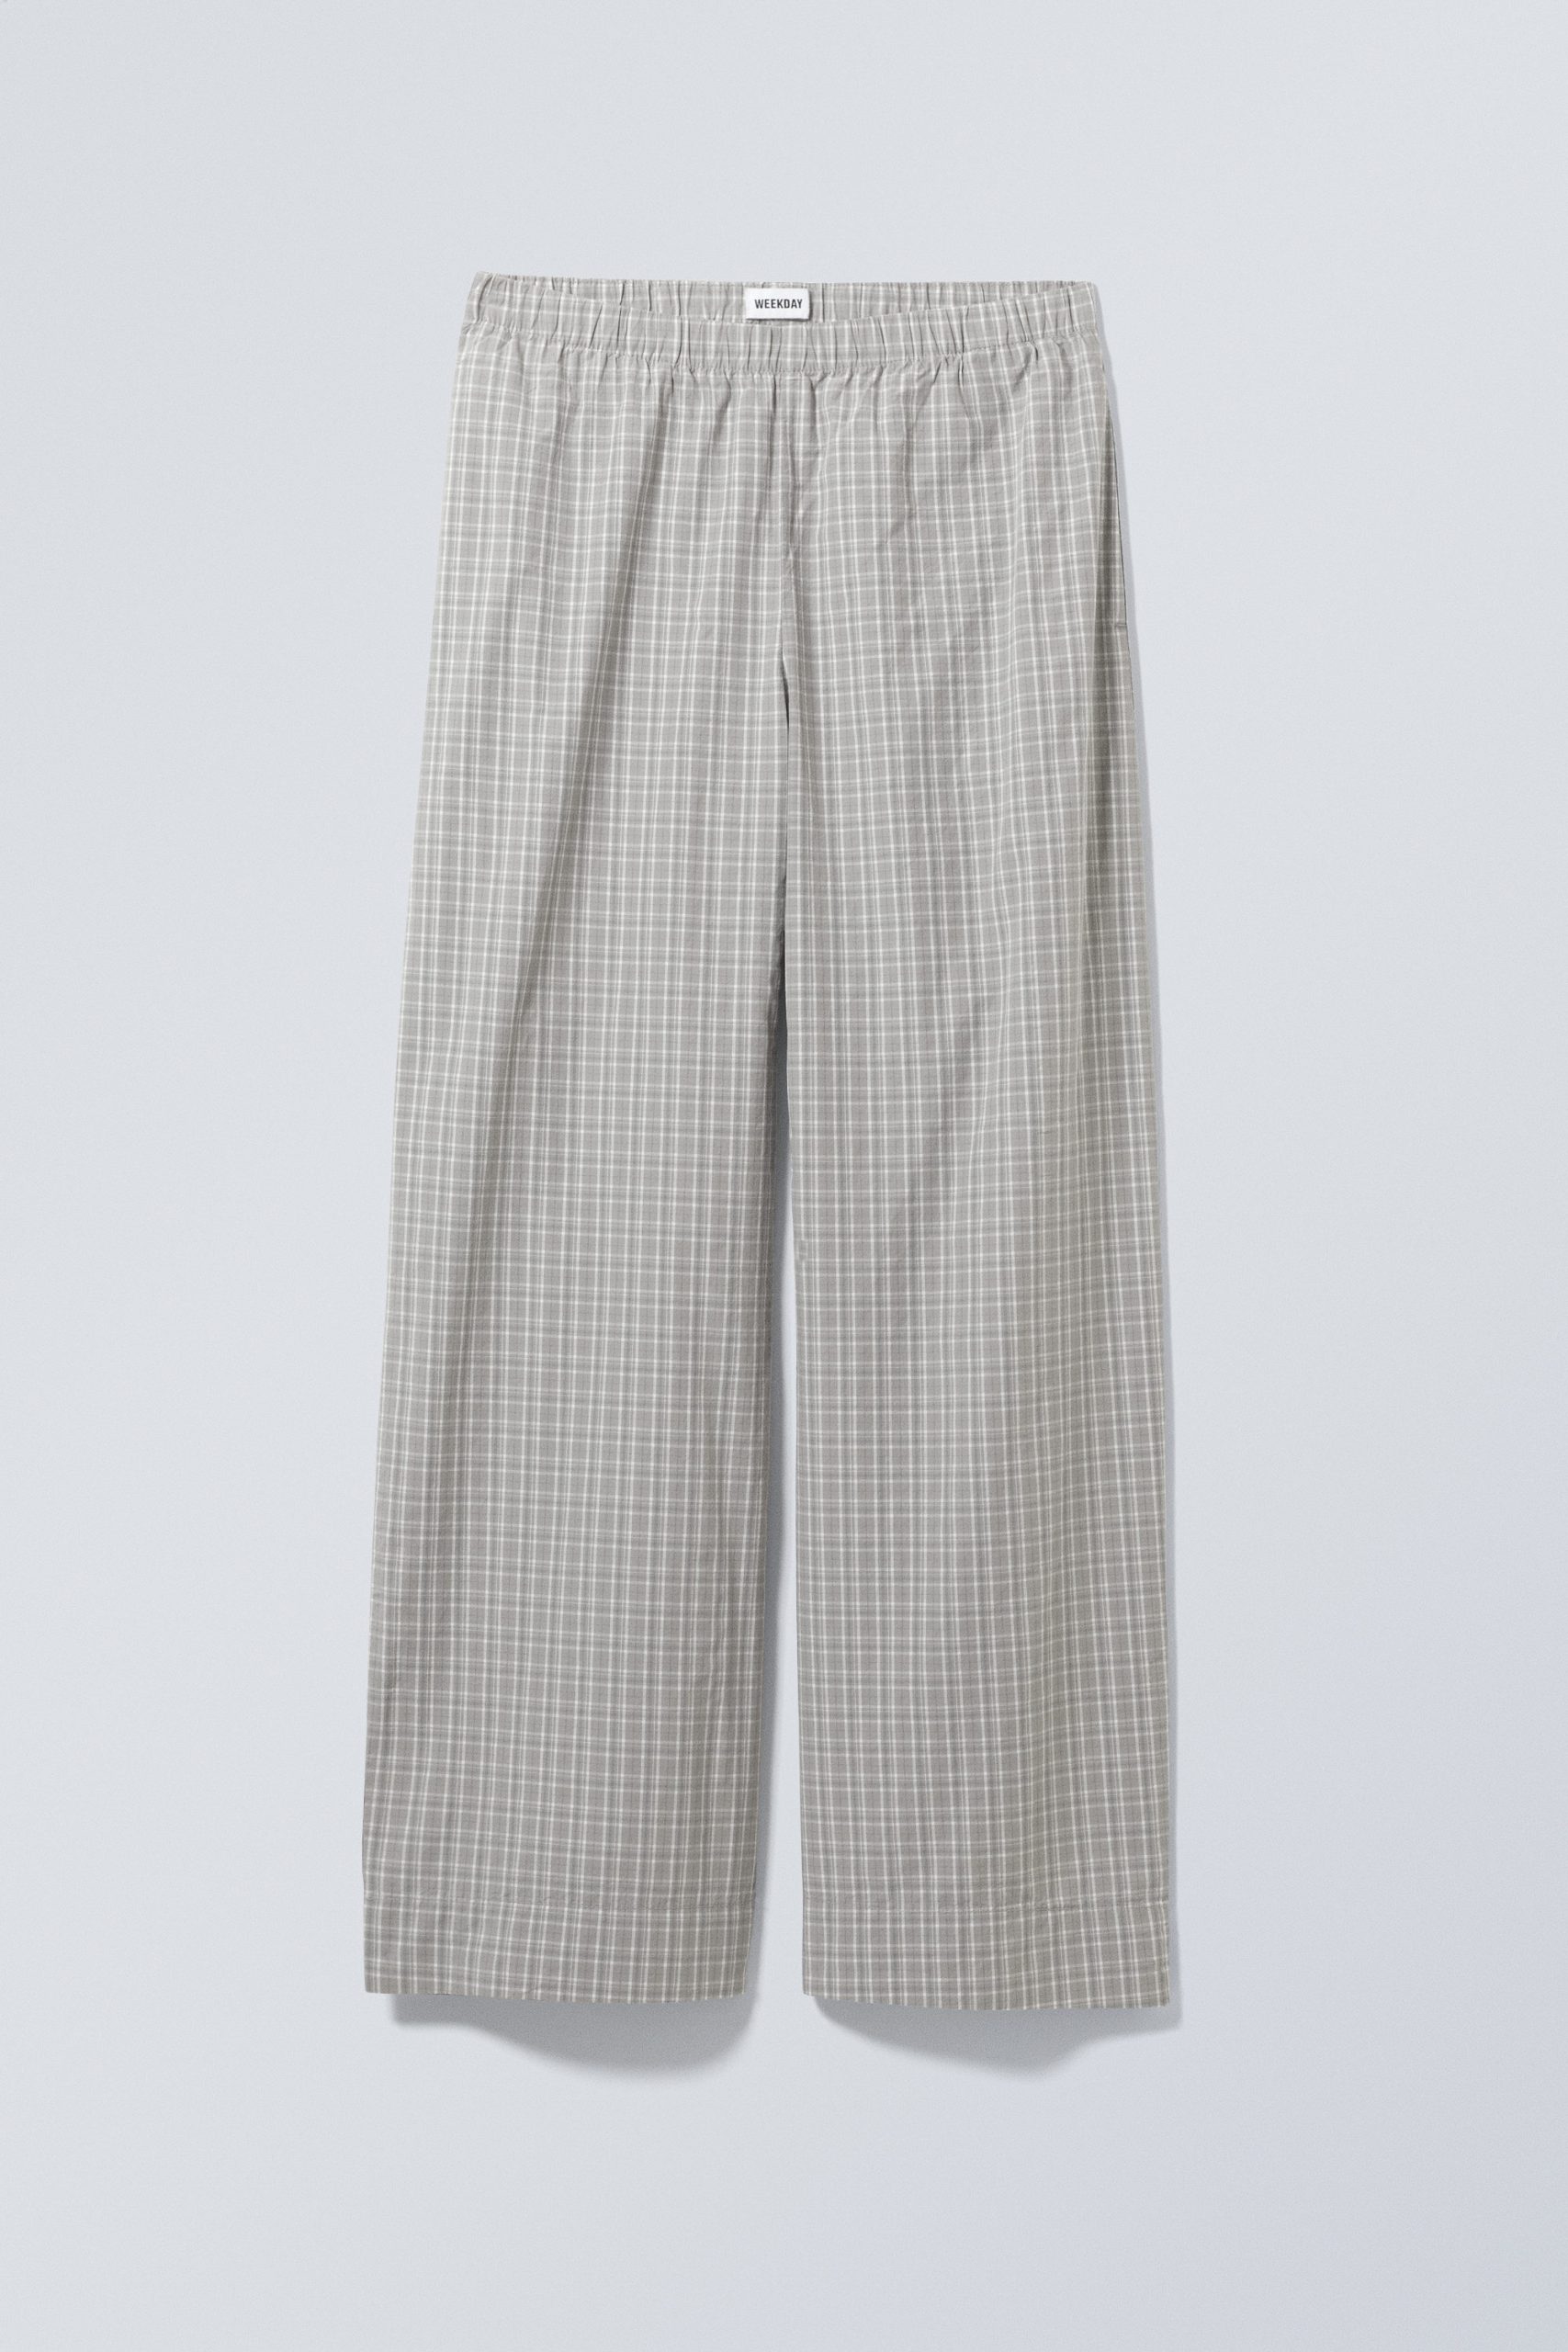 Weekday Relaxte Pyjama-Hose aus Baumwolle Graues Karo, Pyjama-Hosen in Größe XS. Farbe: Grey check